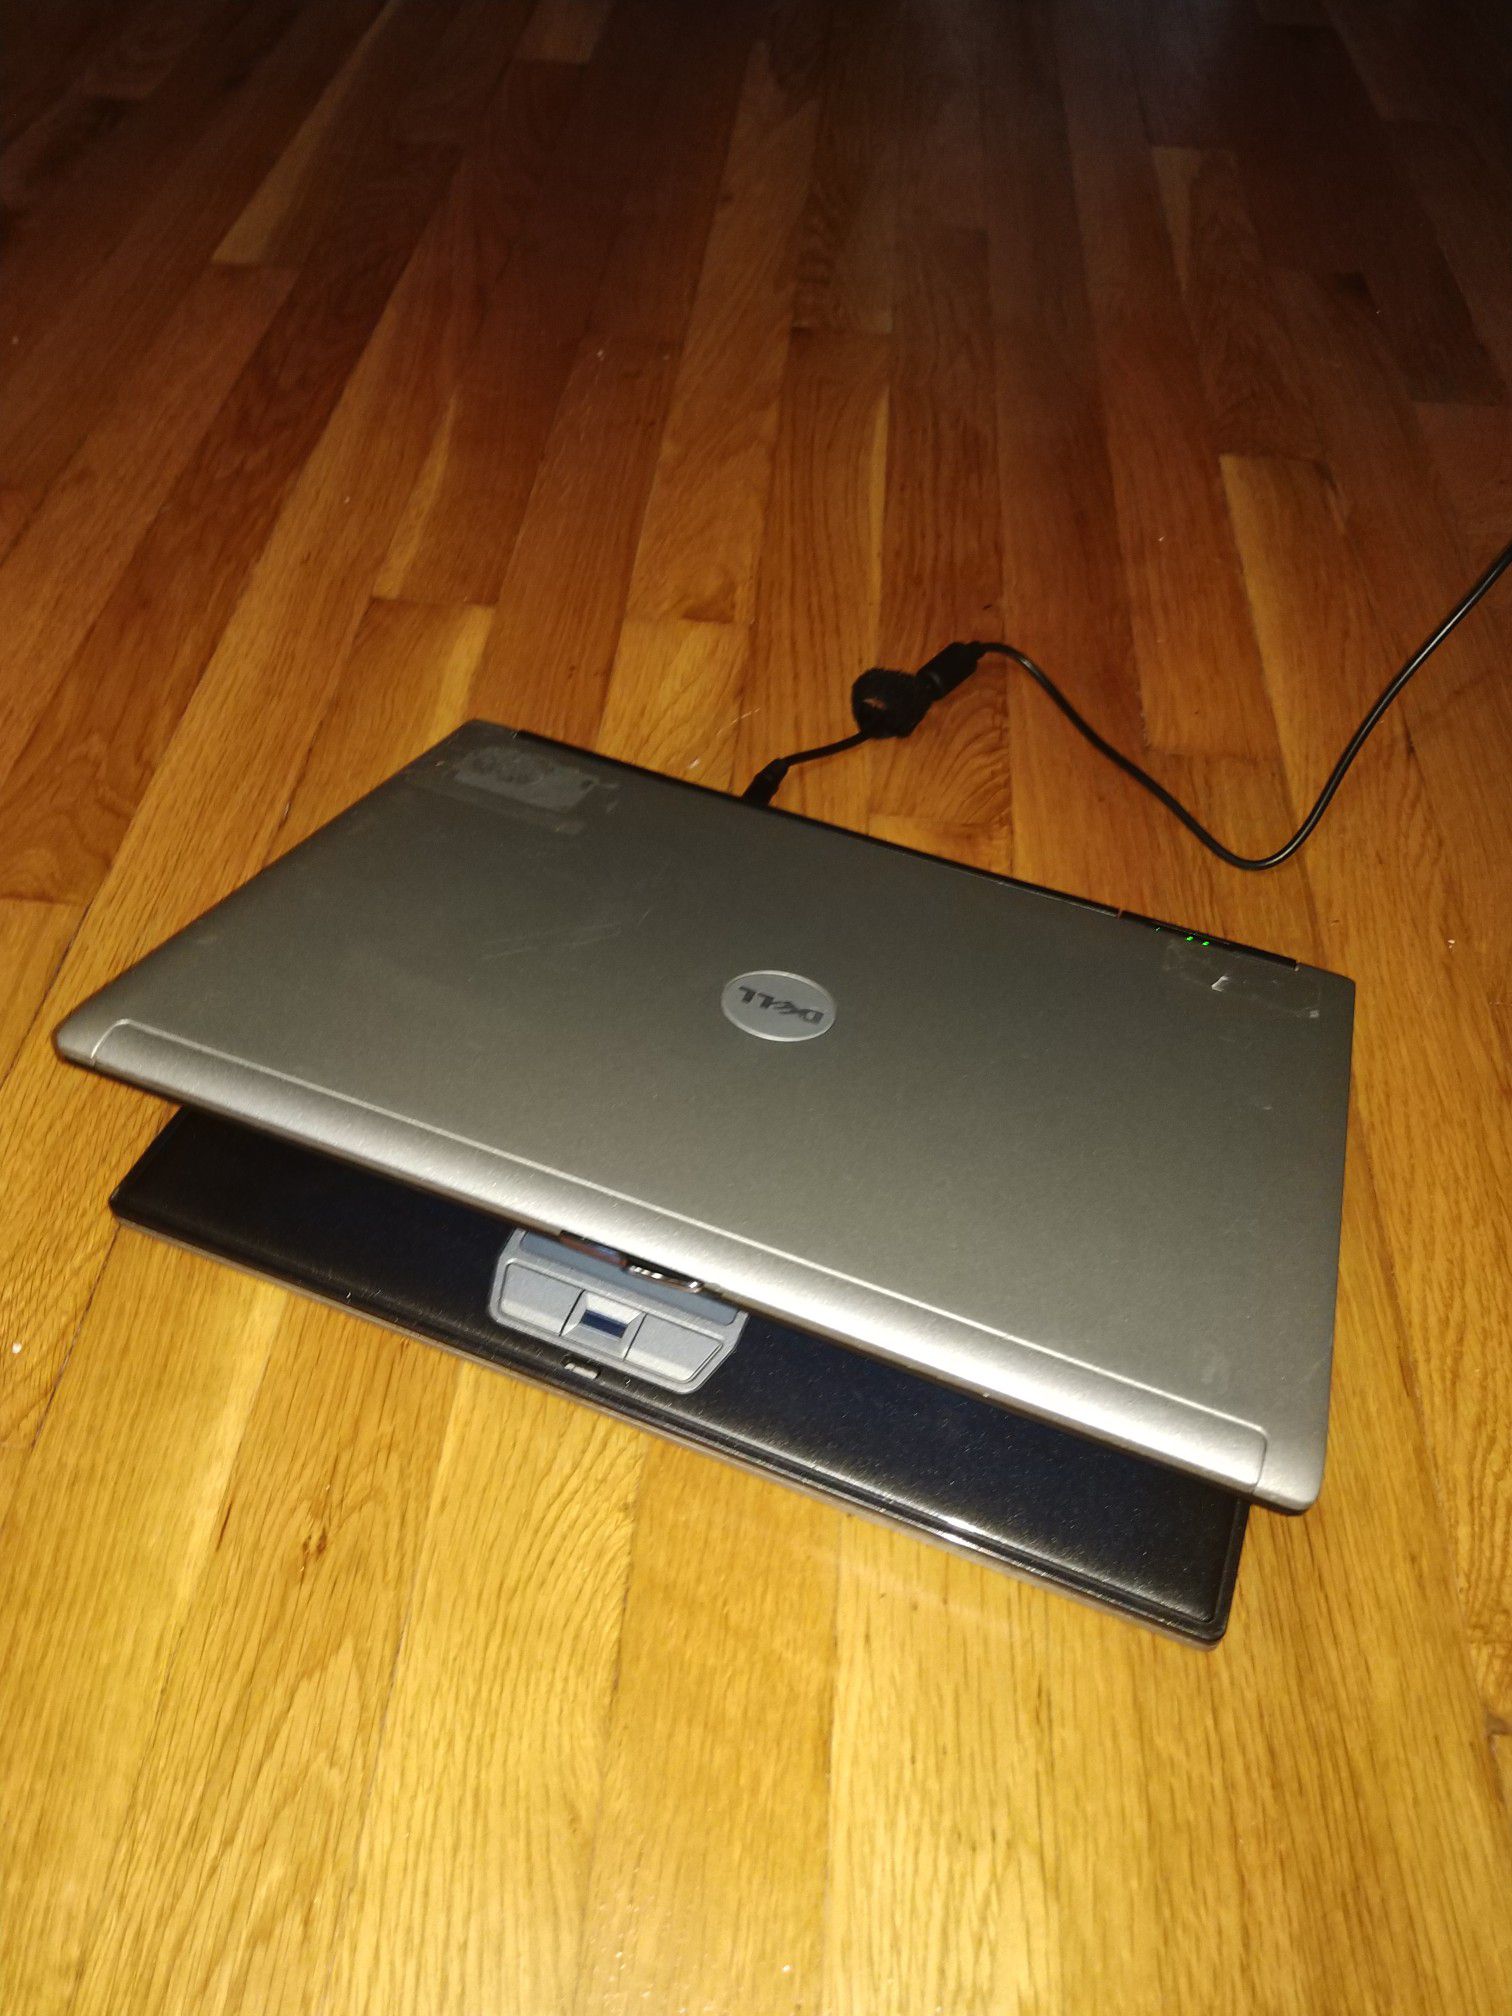 Dell laptop d620 WiFi CD/DVD burner